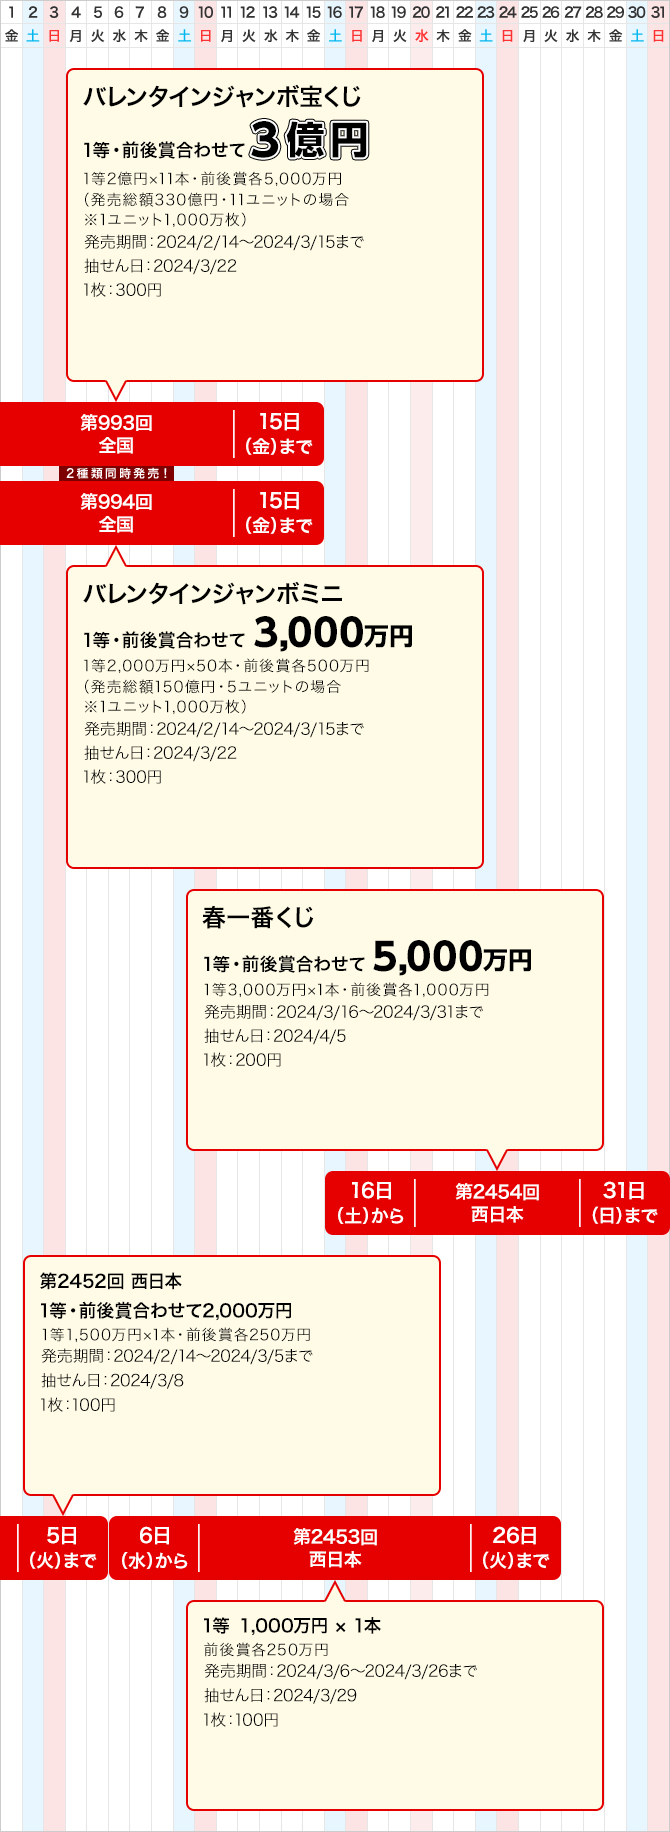 西日本のジャンボ宝くじ等の普通くじ発売スケジュール(3月)